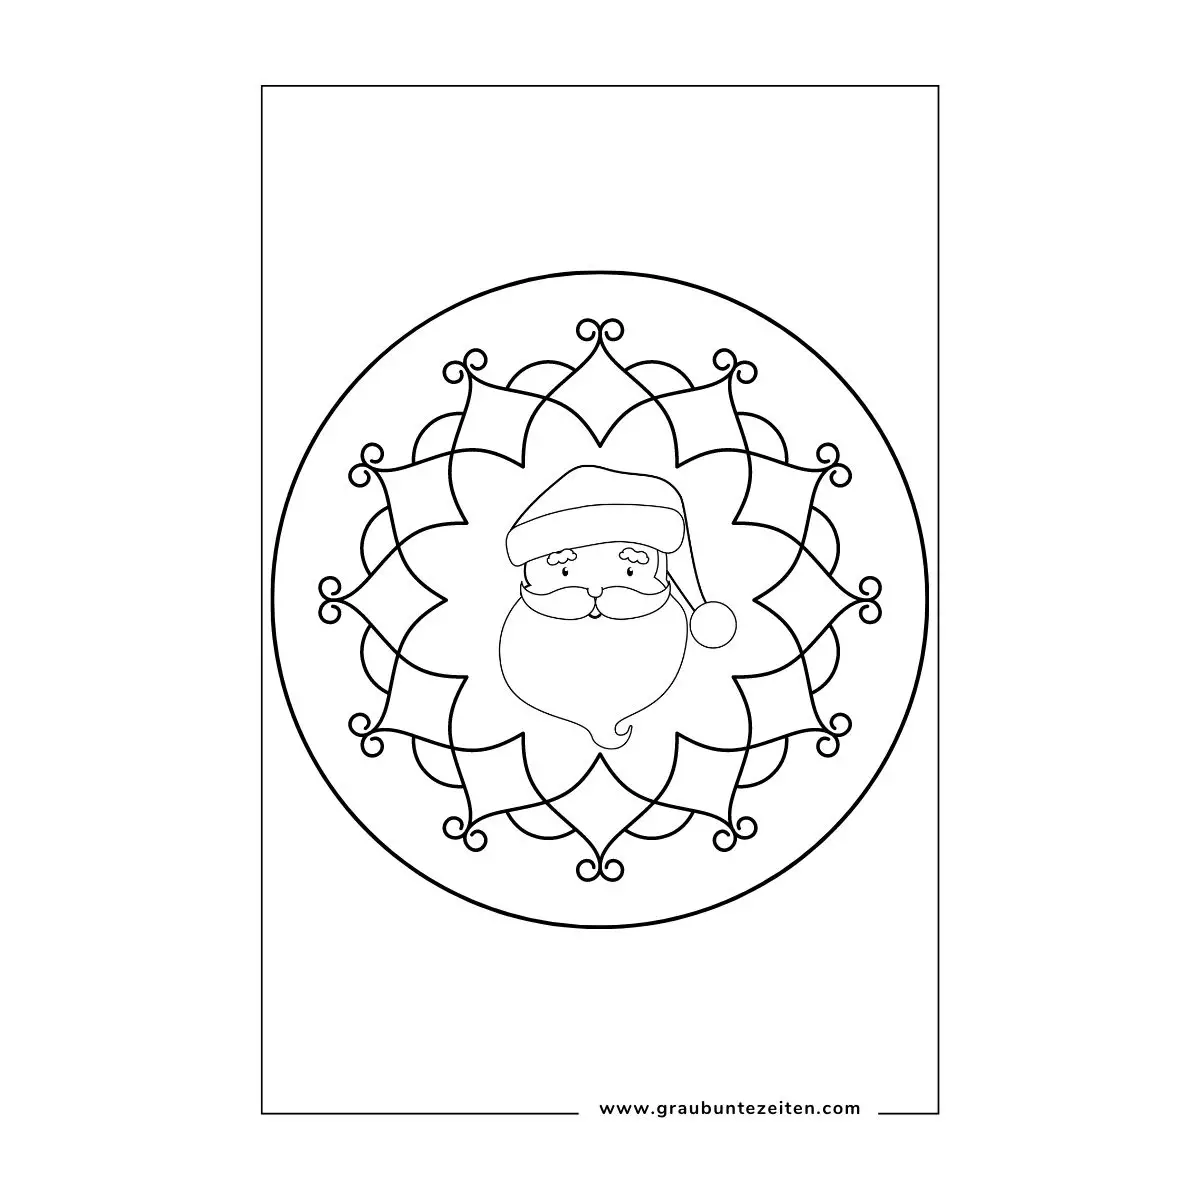 Ausmalbild Mandala. In der Mitte ist der Kopf des Weihnachtsmannes. Als Rahmen sind geschwungene Formen Kreisförmig um den Kopf gezeichnet.